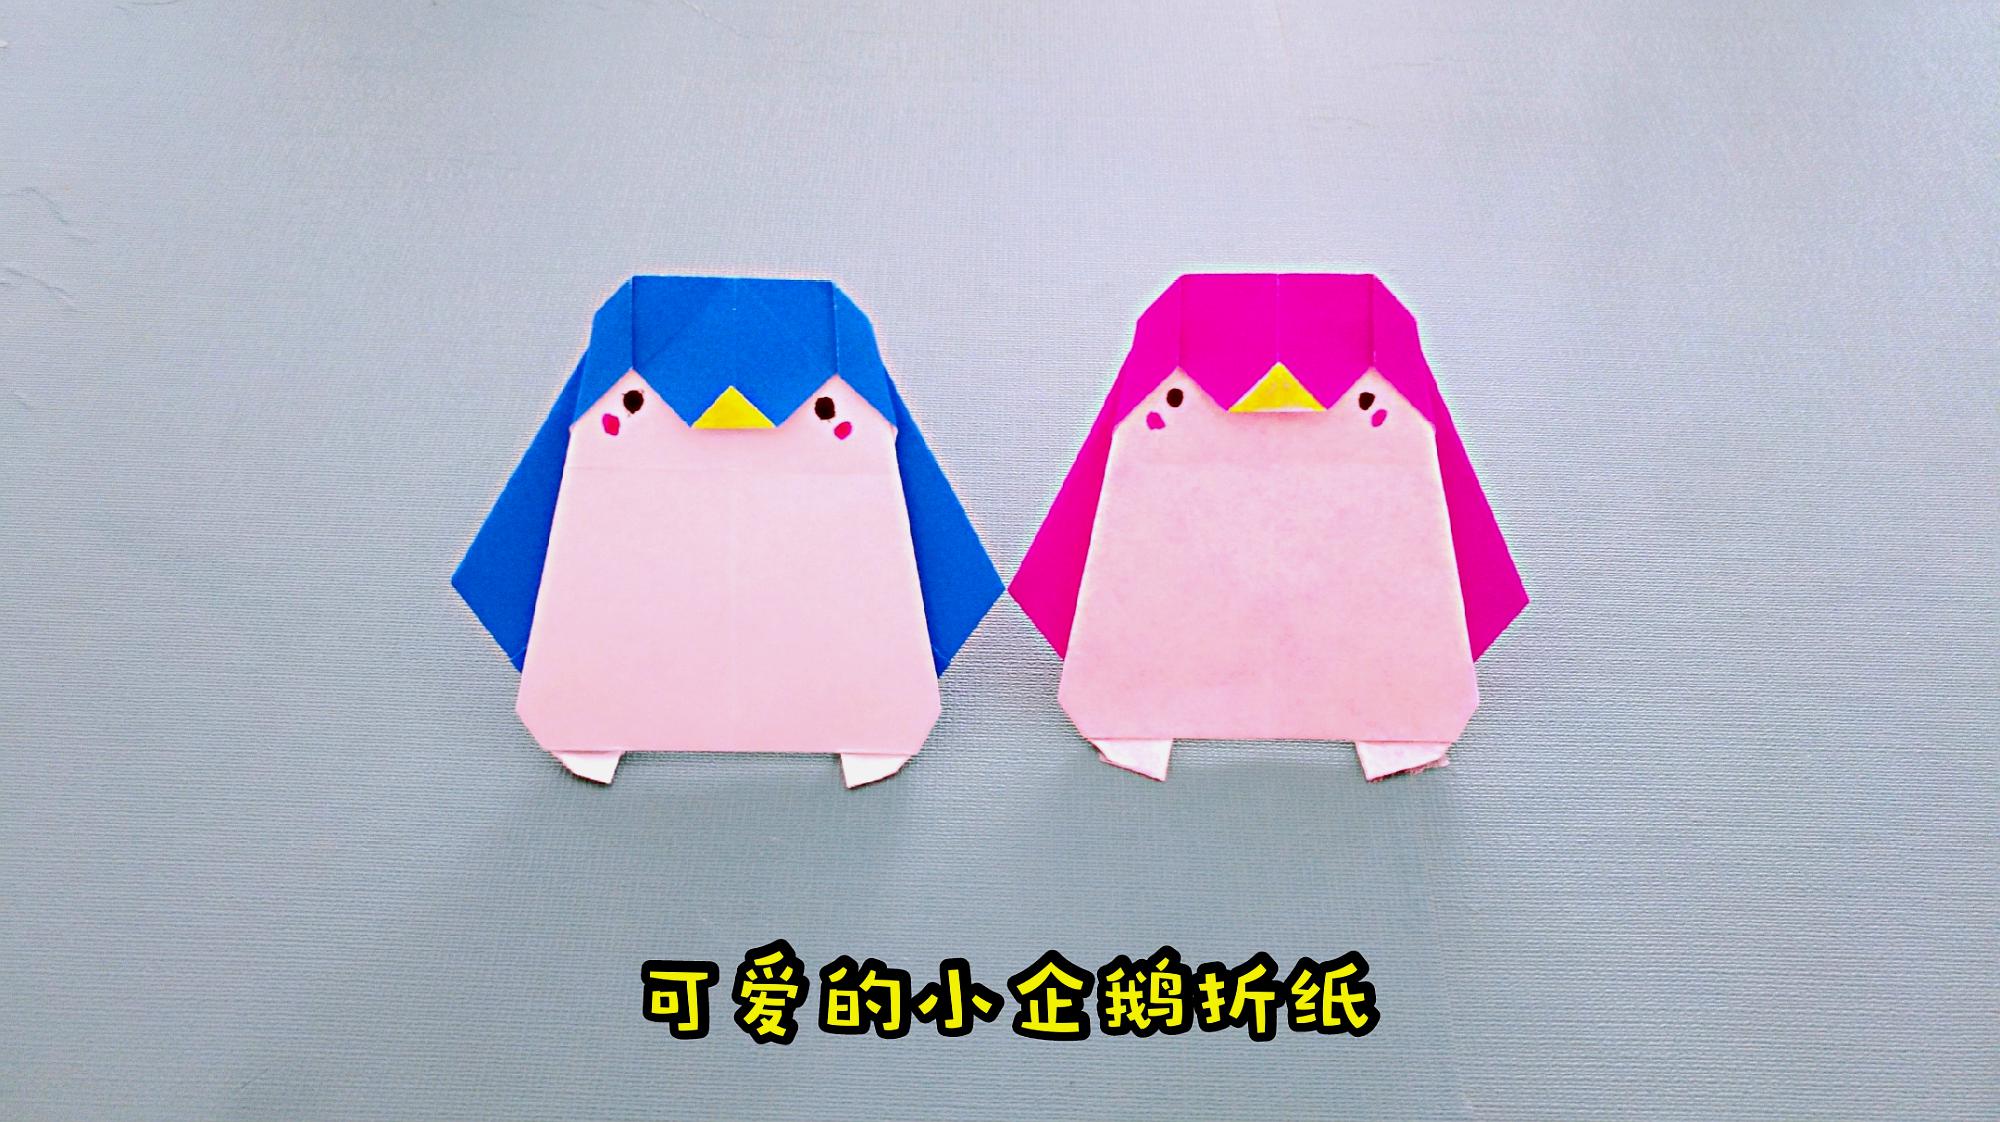 1张纸折个可爱小企鹅,步骤其实很简单,很多人见过却不会折